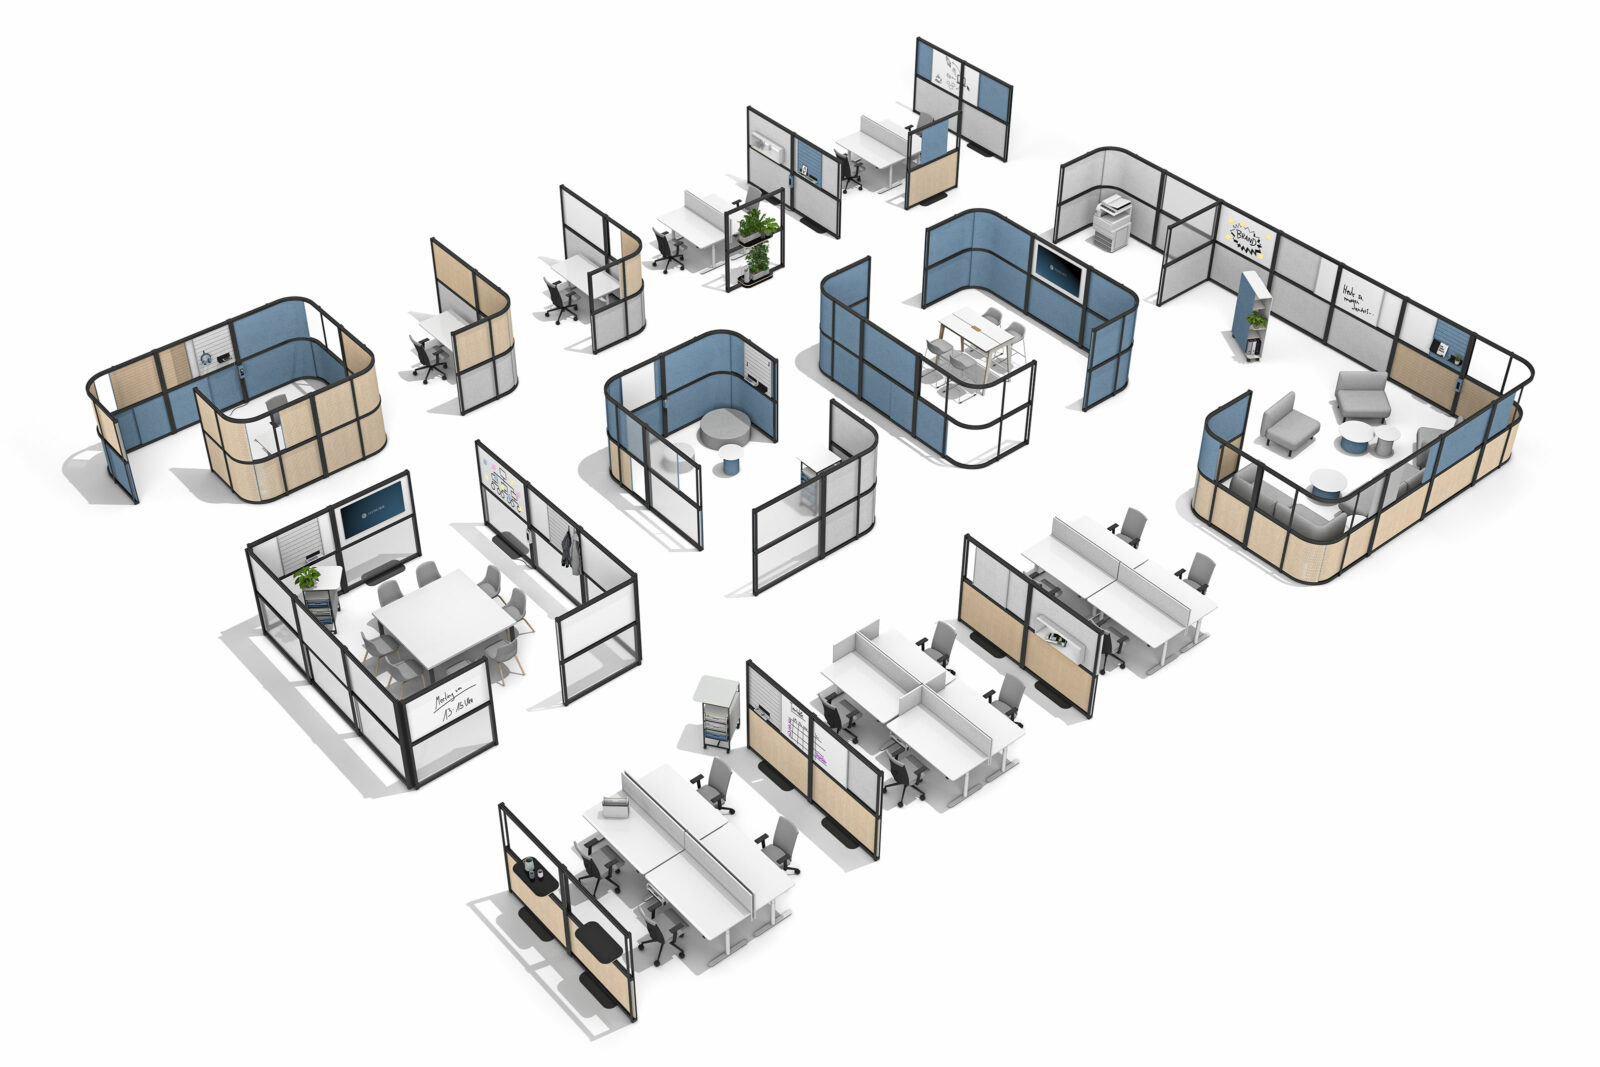 Raumaufsicht eines offenen Büros, das durch Stellwände zoniert ist und verschiedenen Bürozonen zeigt